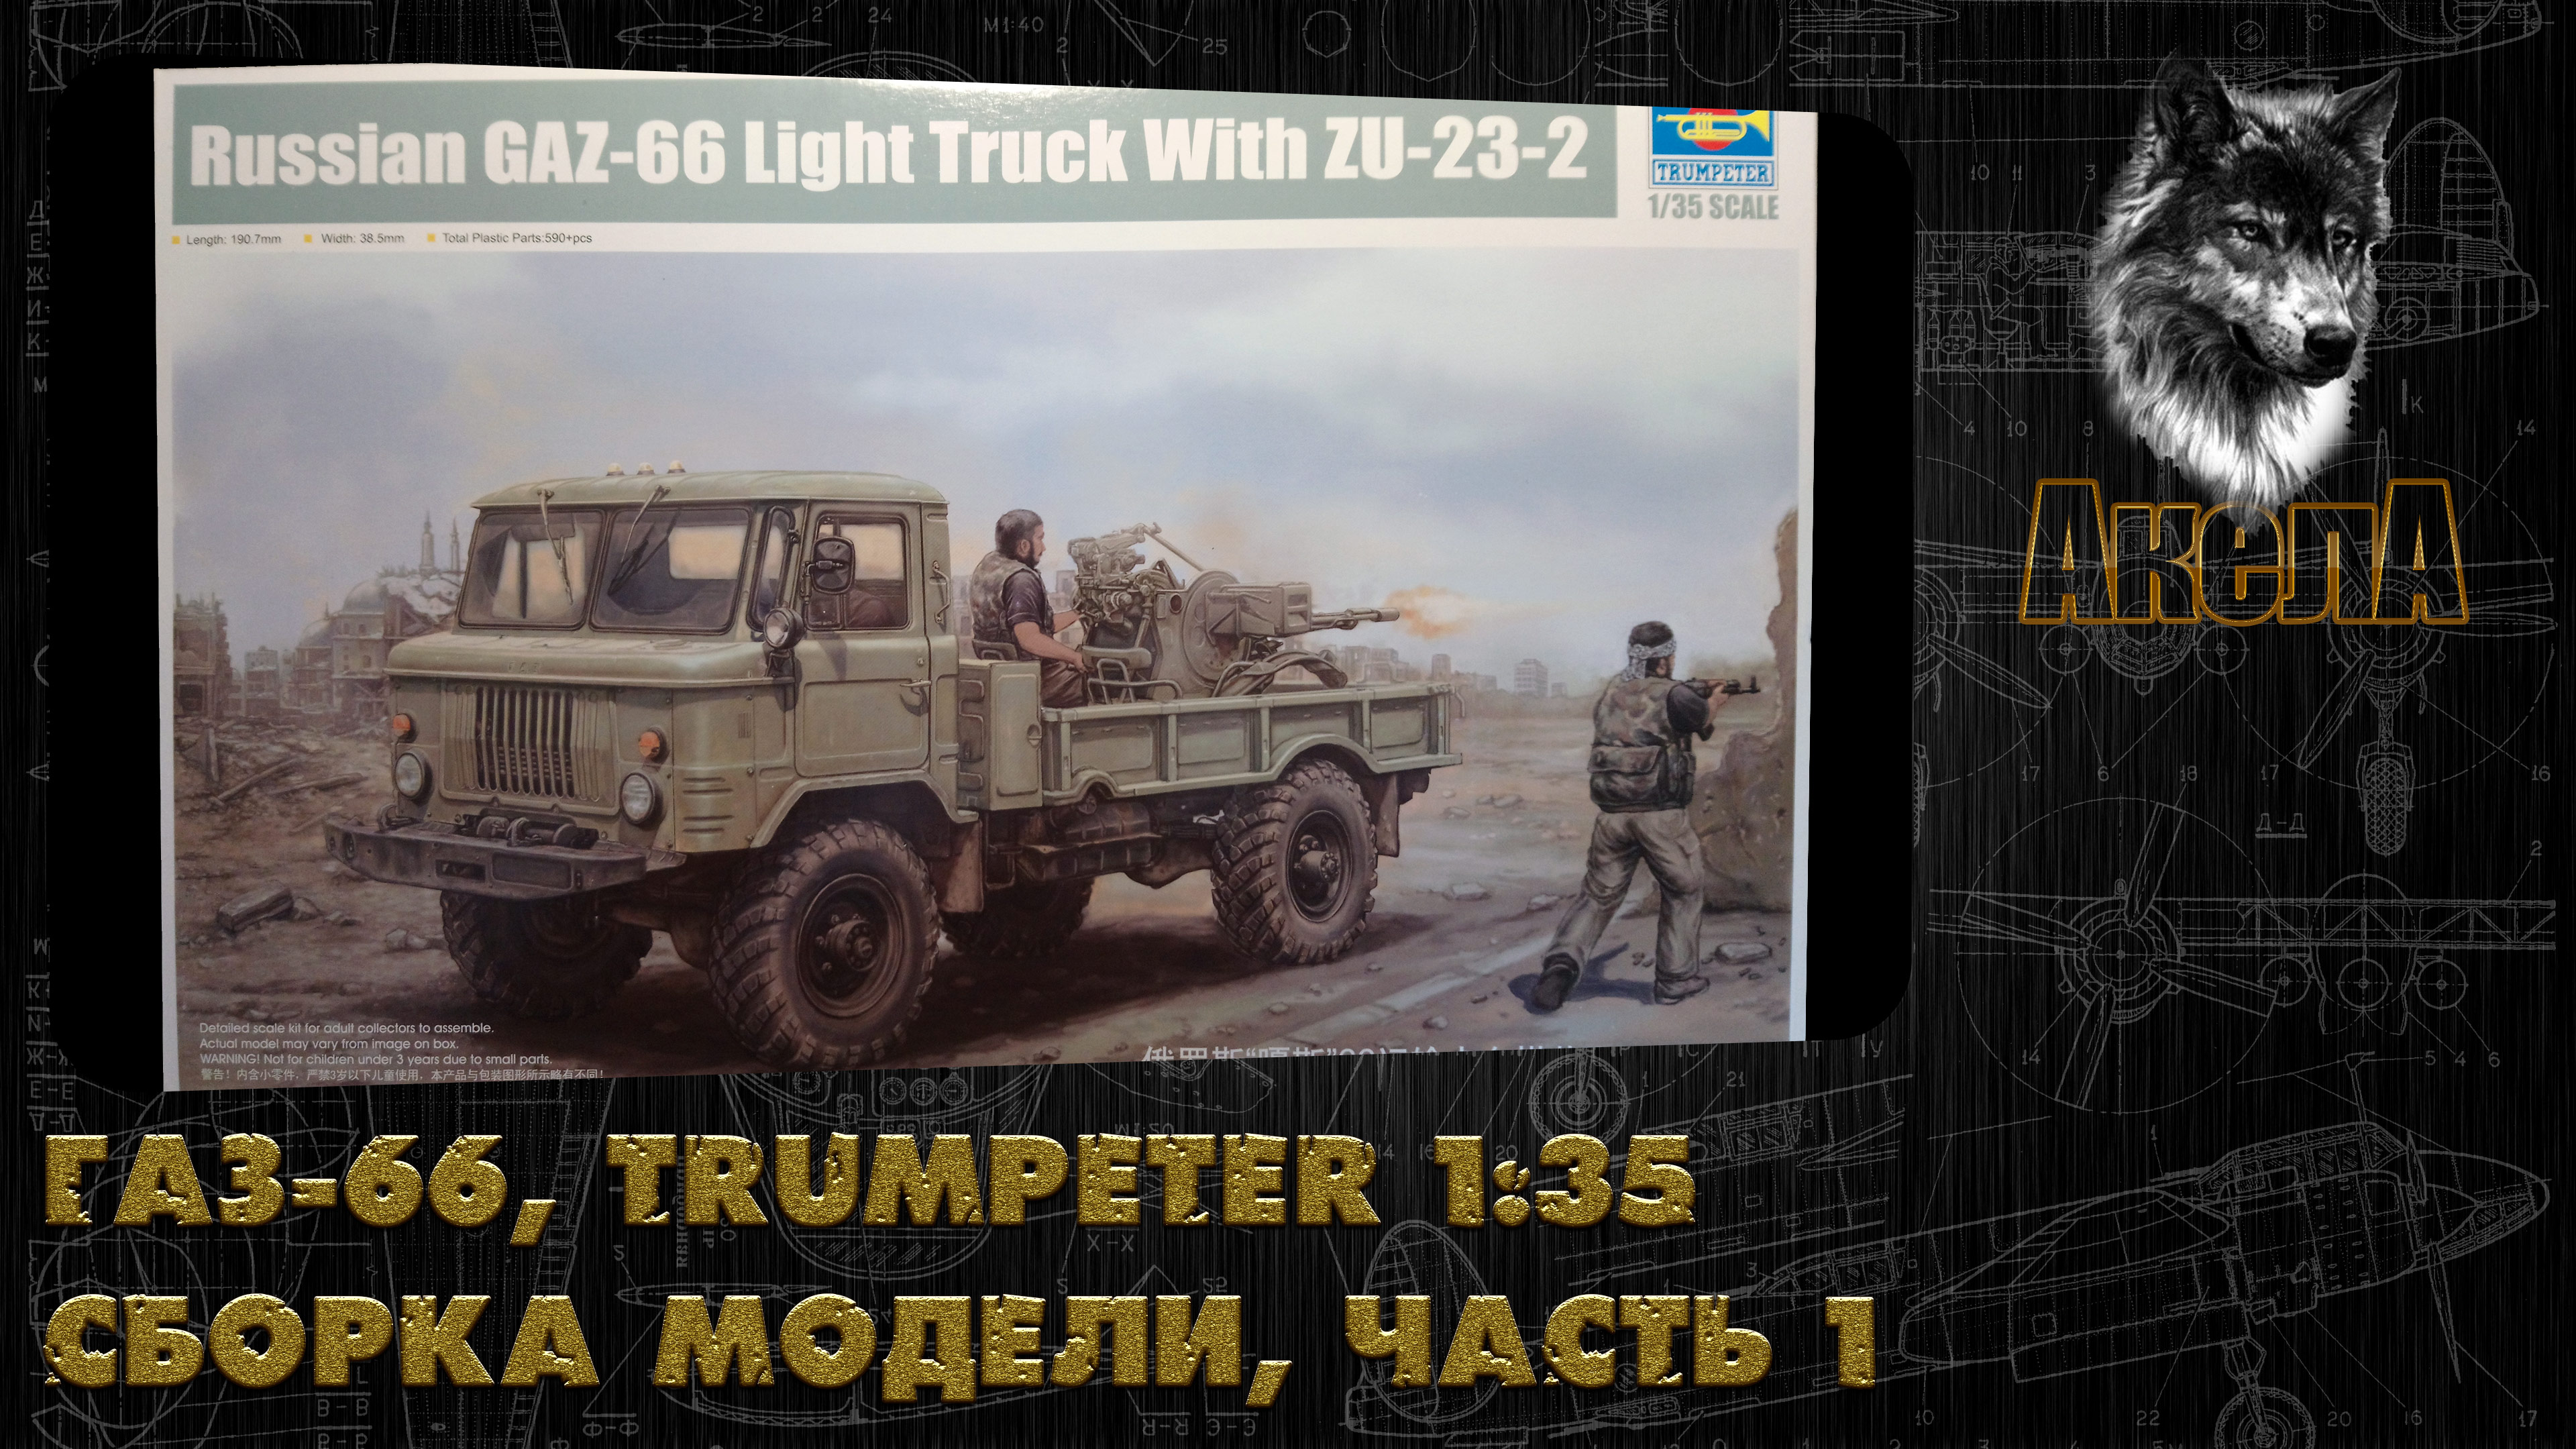 ГАЗ-66 с ЗУ-23-2, Trumpeter 1/35, сборка модели, часть 1